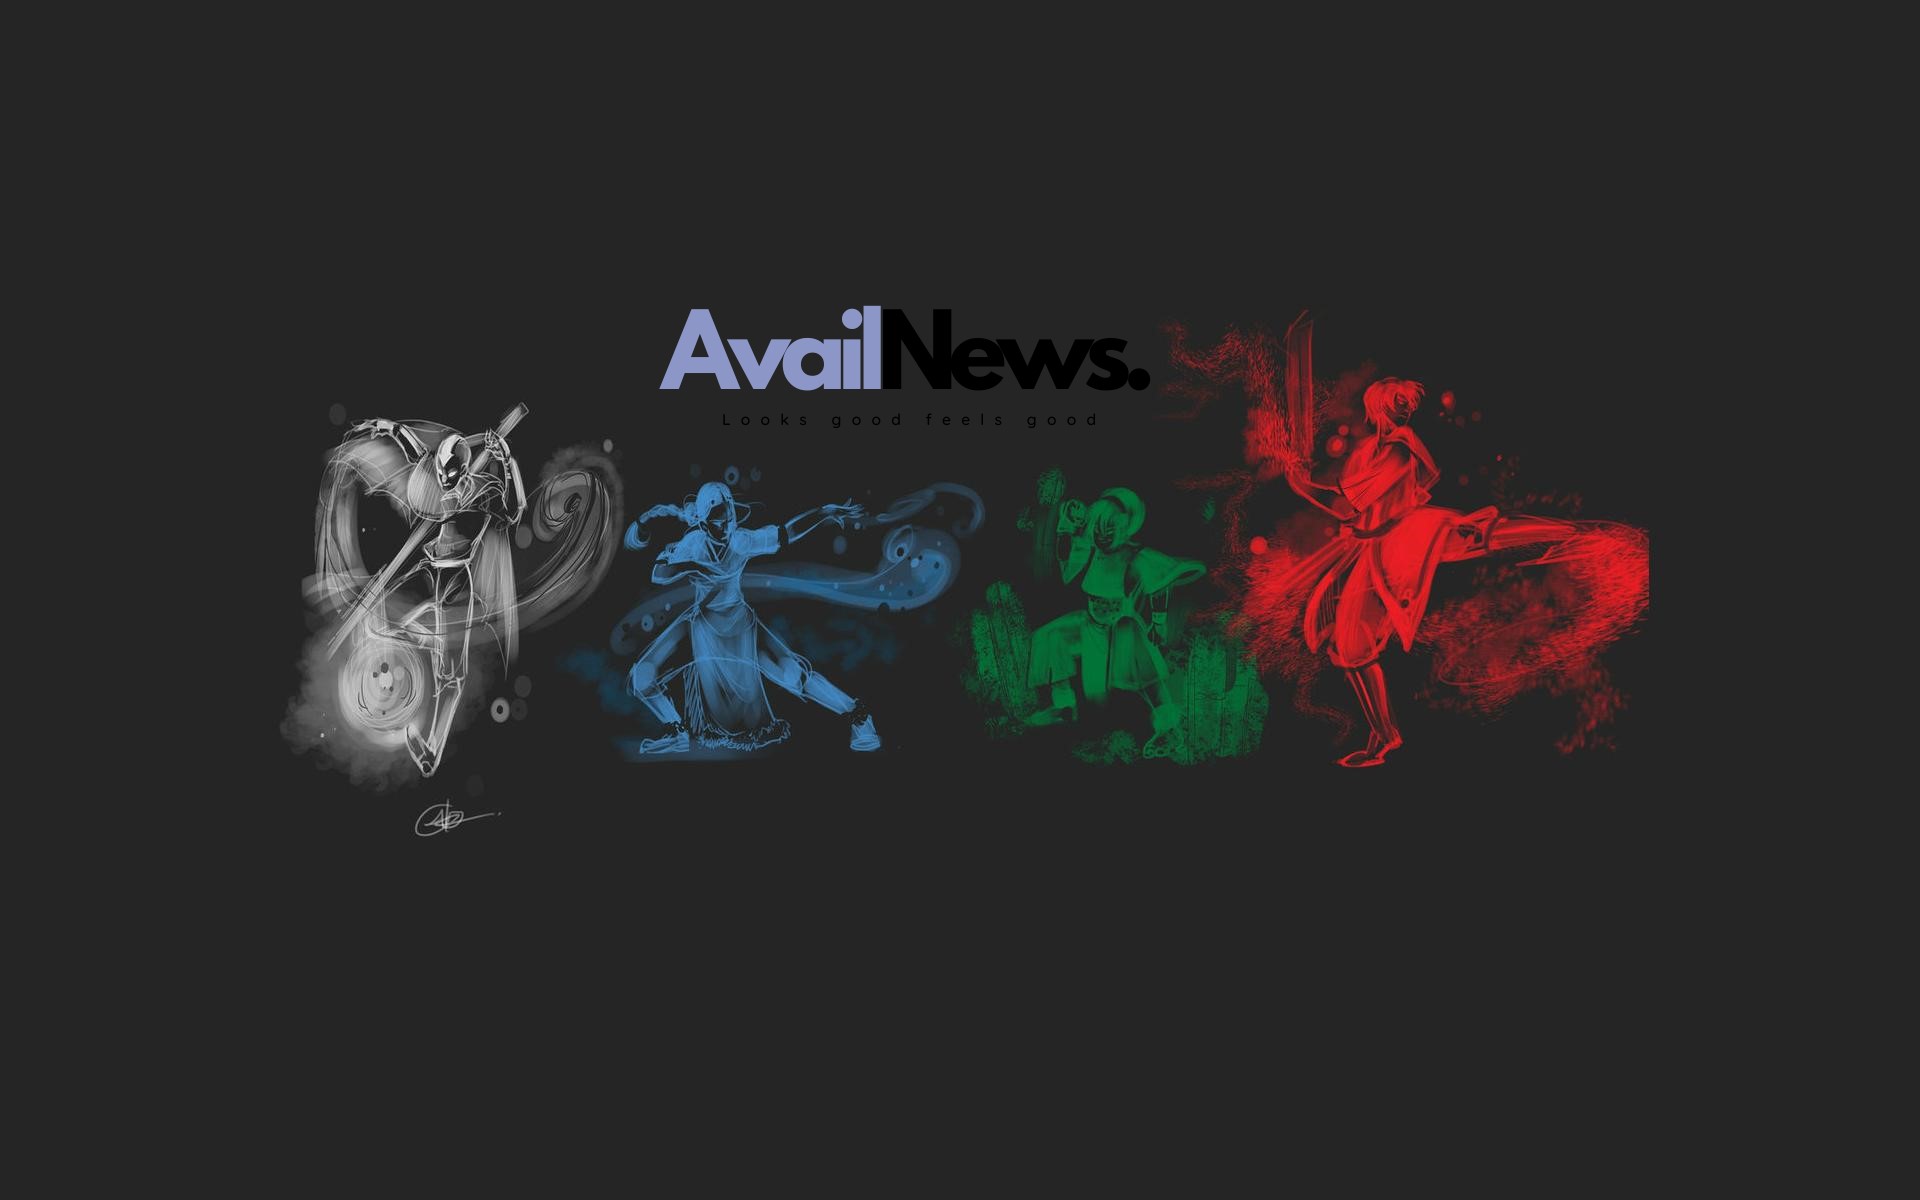 (c) Availnews.com